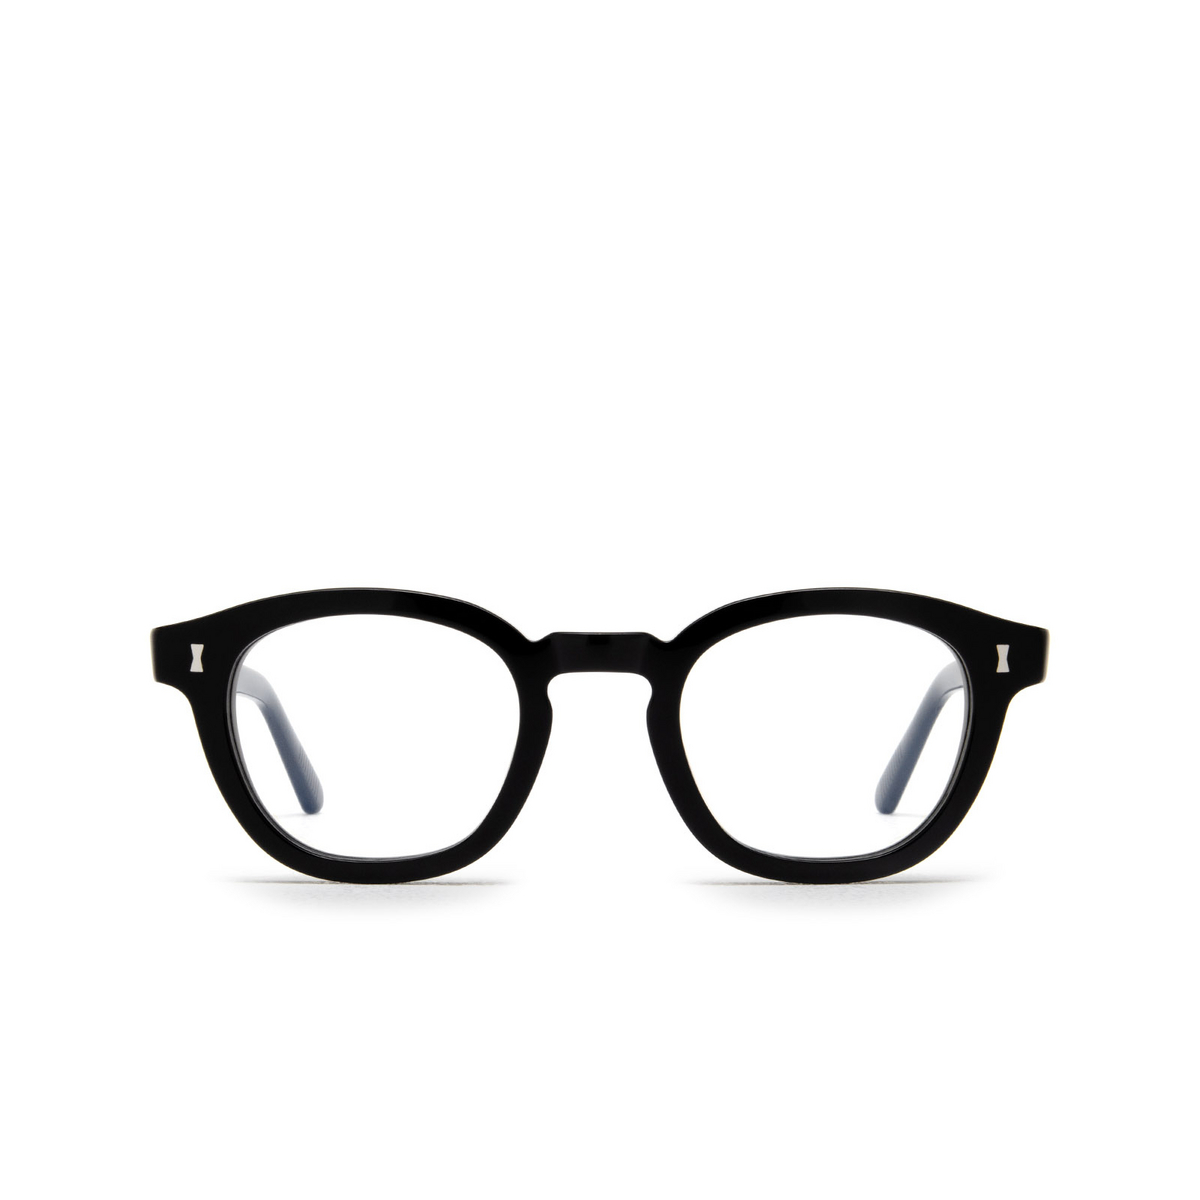 Cubitts MORELAND Eyeglasses MOR-R-BLA Black - front view